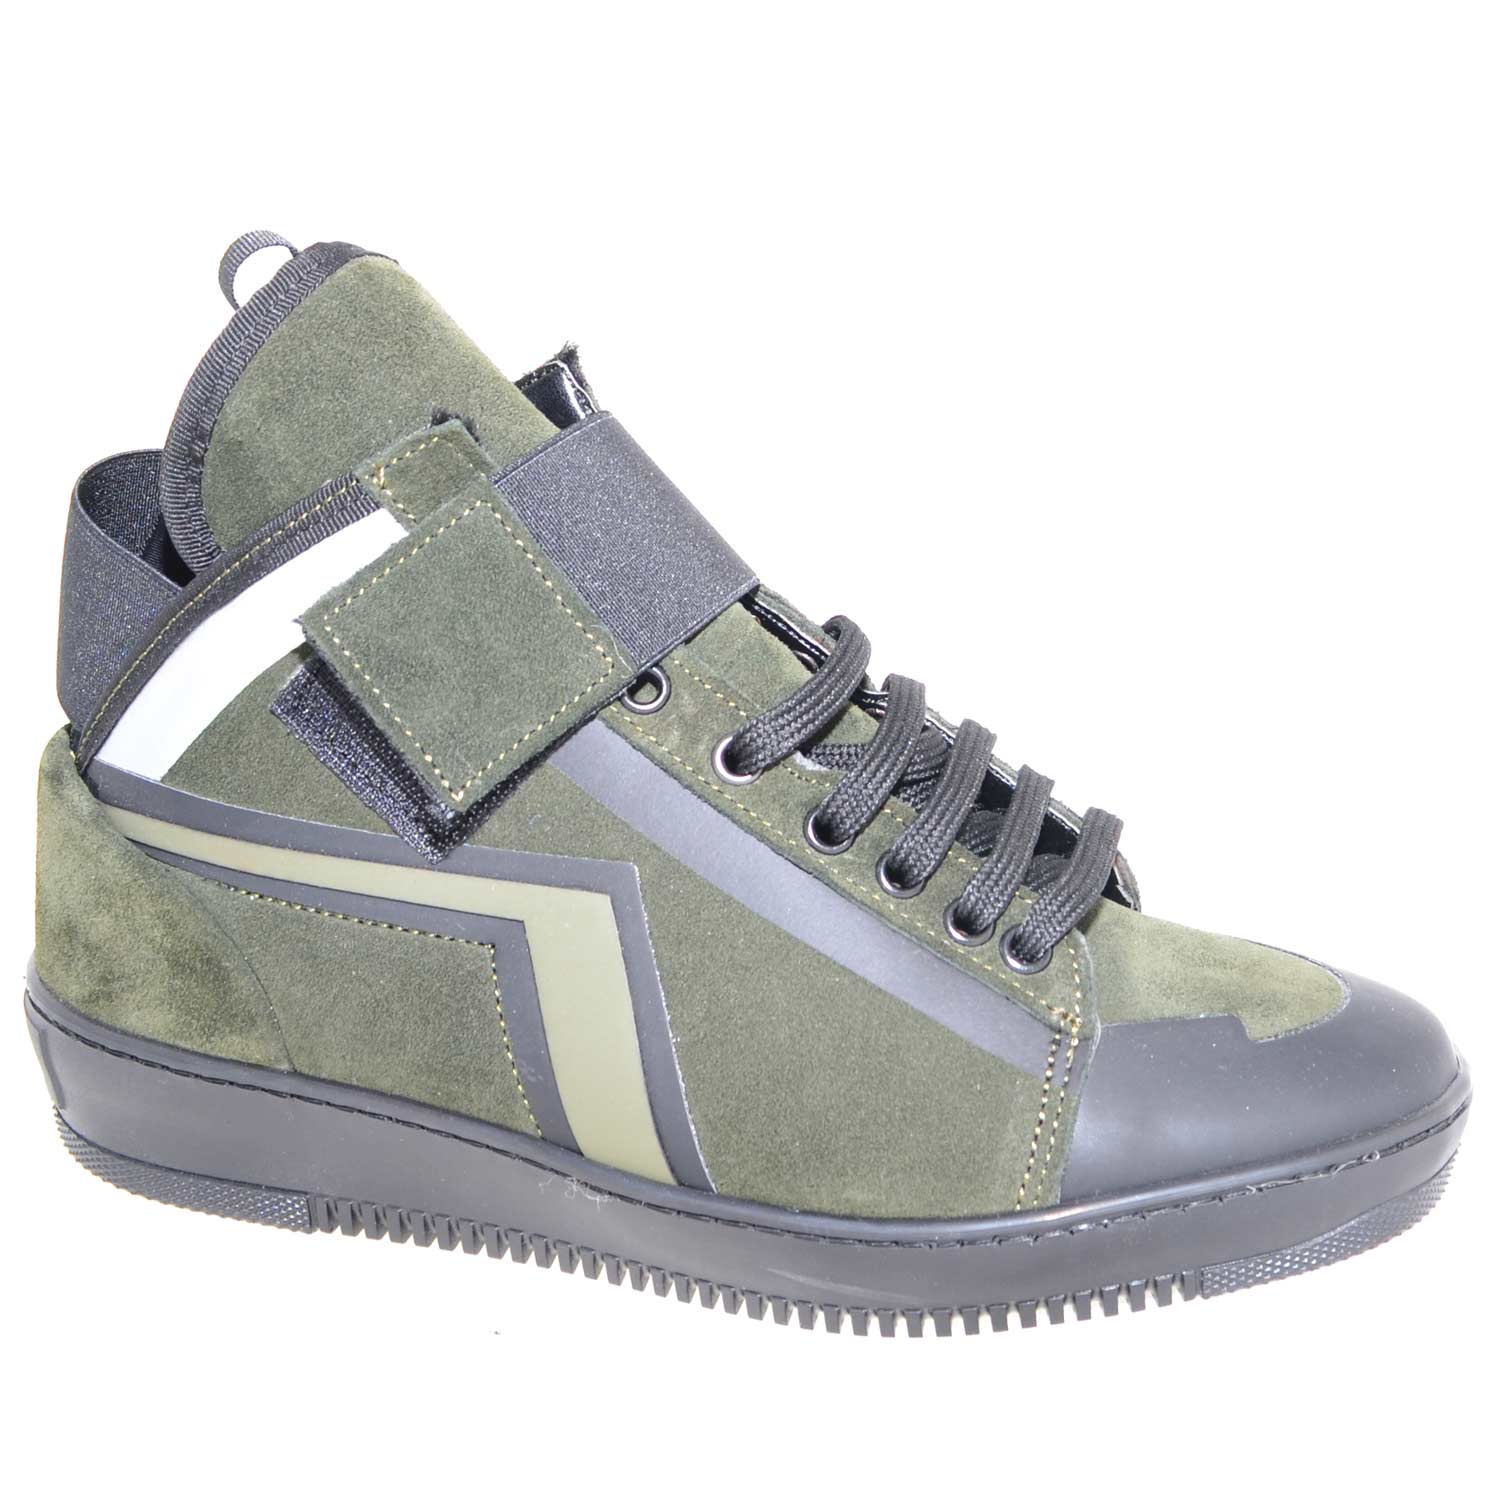 Sneakers alta made in italy  art.PM002 in vera pelle scamosciata verde con strappo ed elastico nero inserti di gommato.